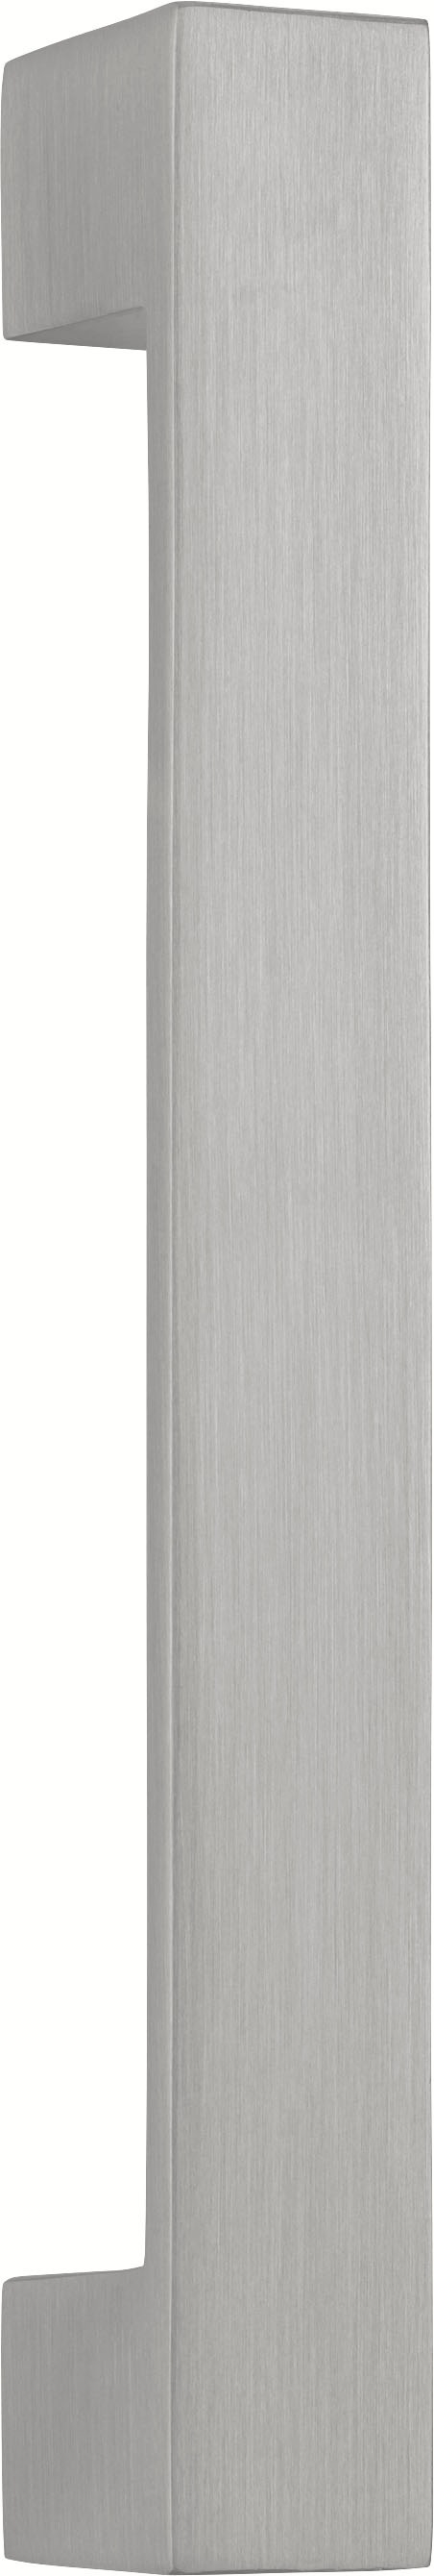 HELD MÖBEL Hängeschrank »Tinnum«, 60 cm breit, MDF-Fronten, Metallgriff